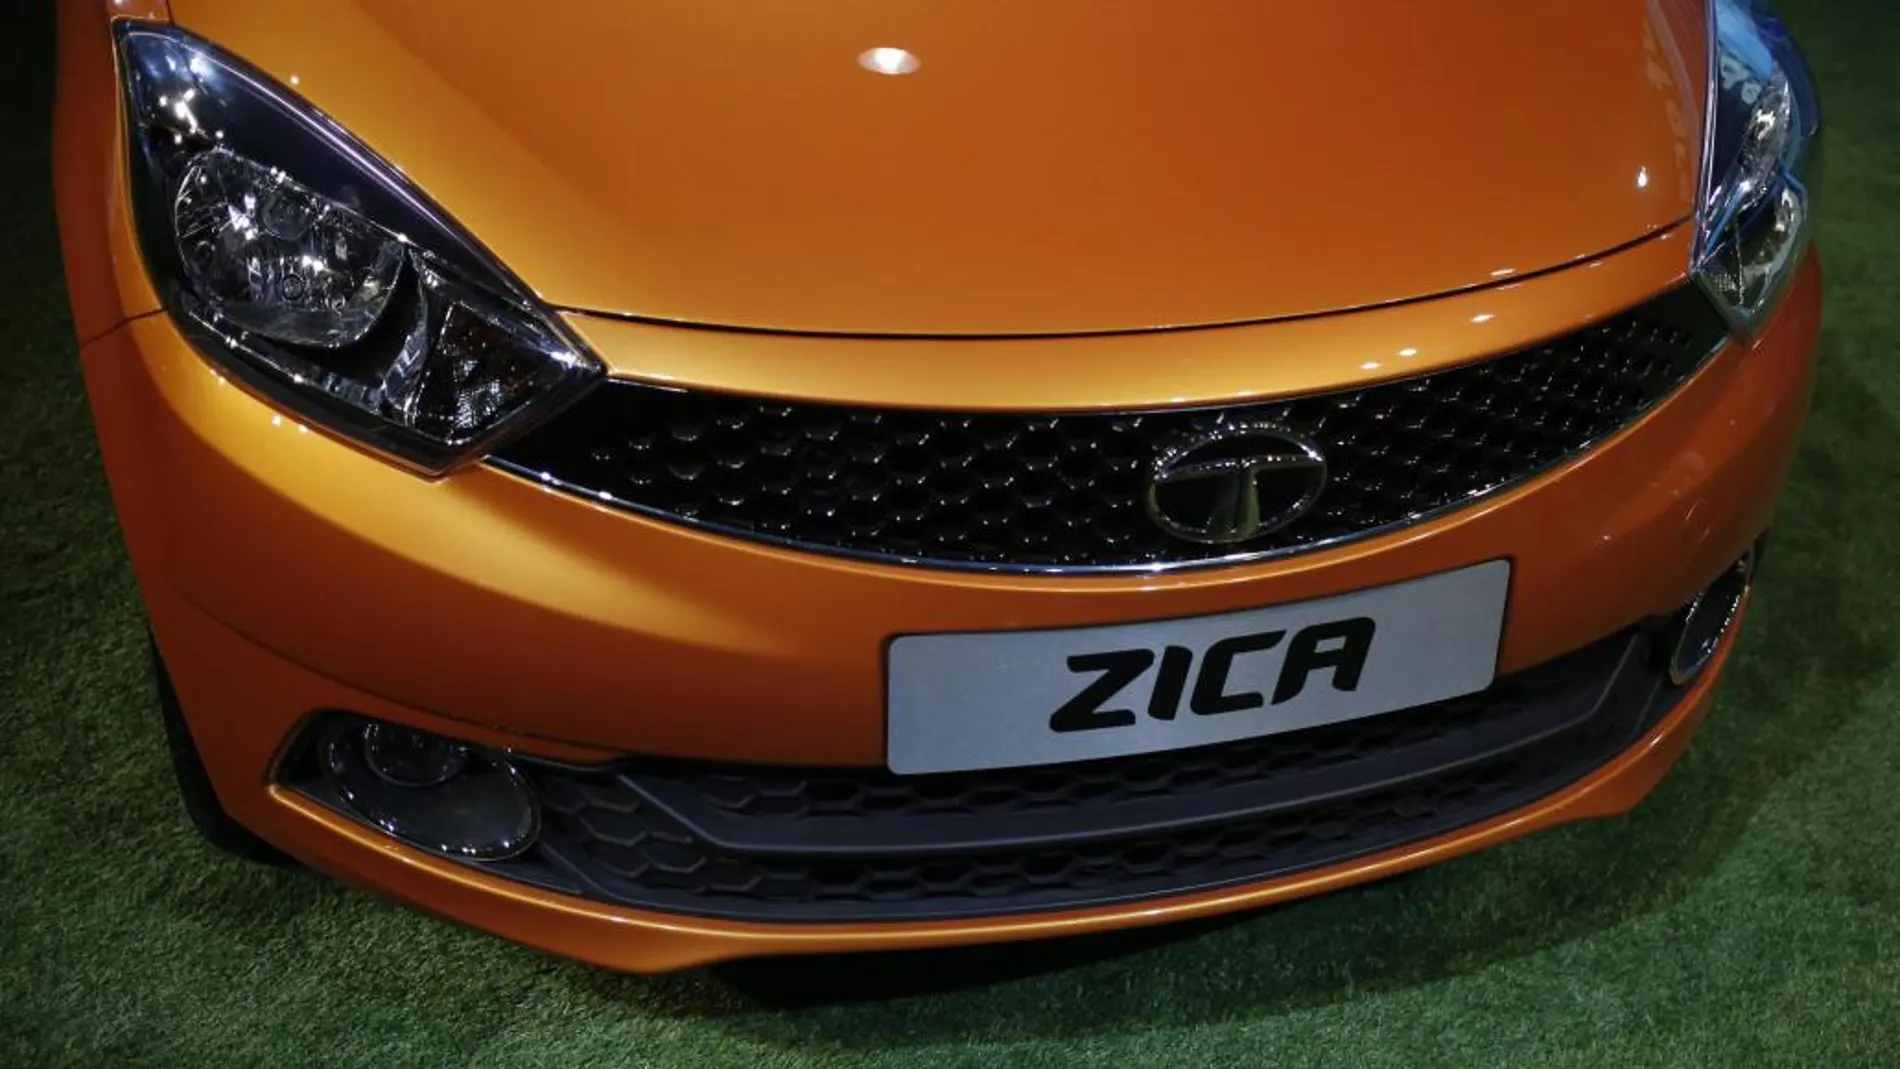 El coche de Tata Motors «Zica» cuyo nombre va a ser cambiado